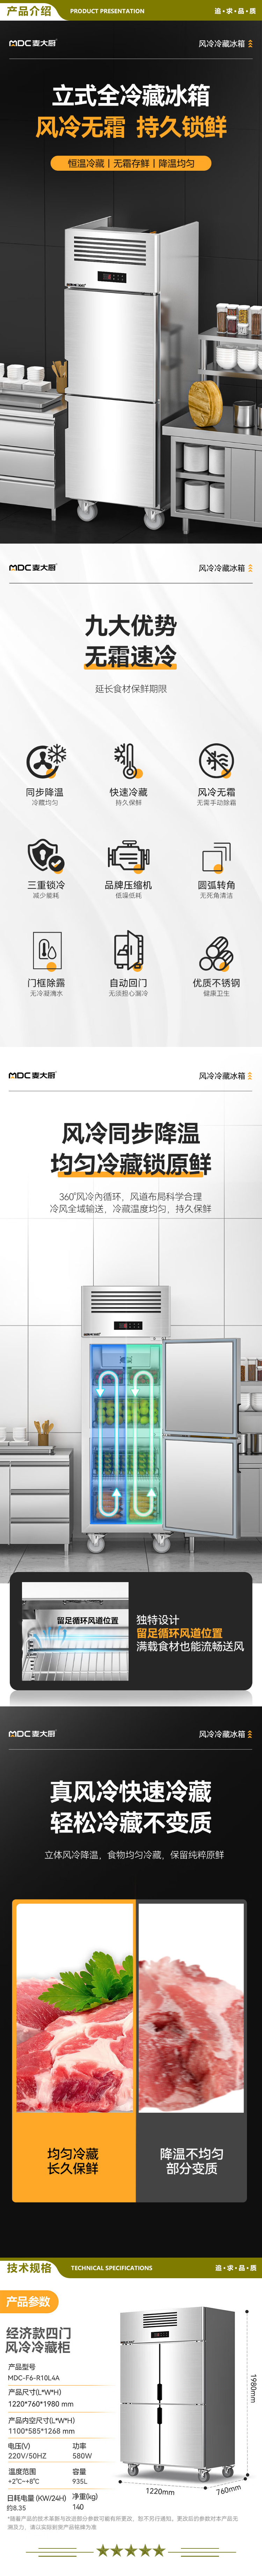 麦大厨 MDC-F6-R10L4A 四门冰箱商用冰柜不锈钢立式厨房饭店酒店风冷冷藏大容量保鲜冰箱   2.jpg